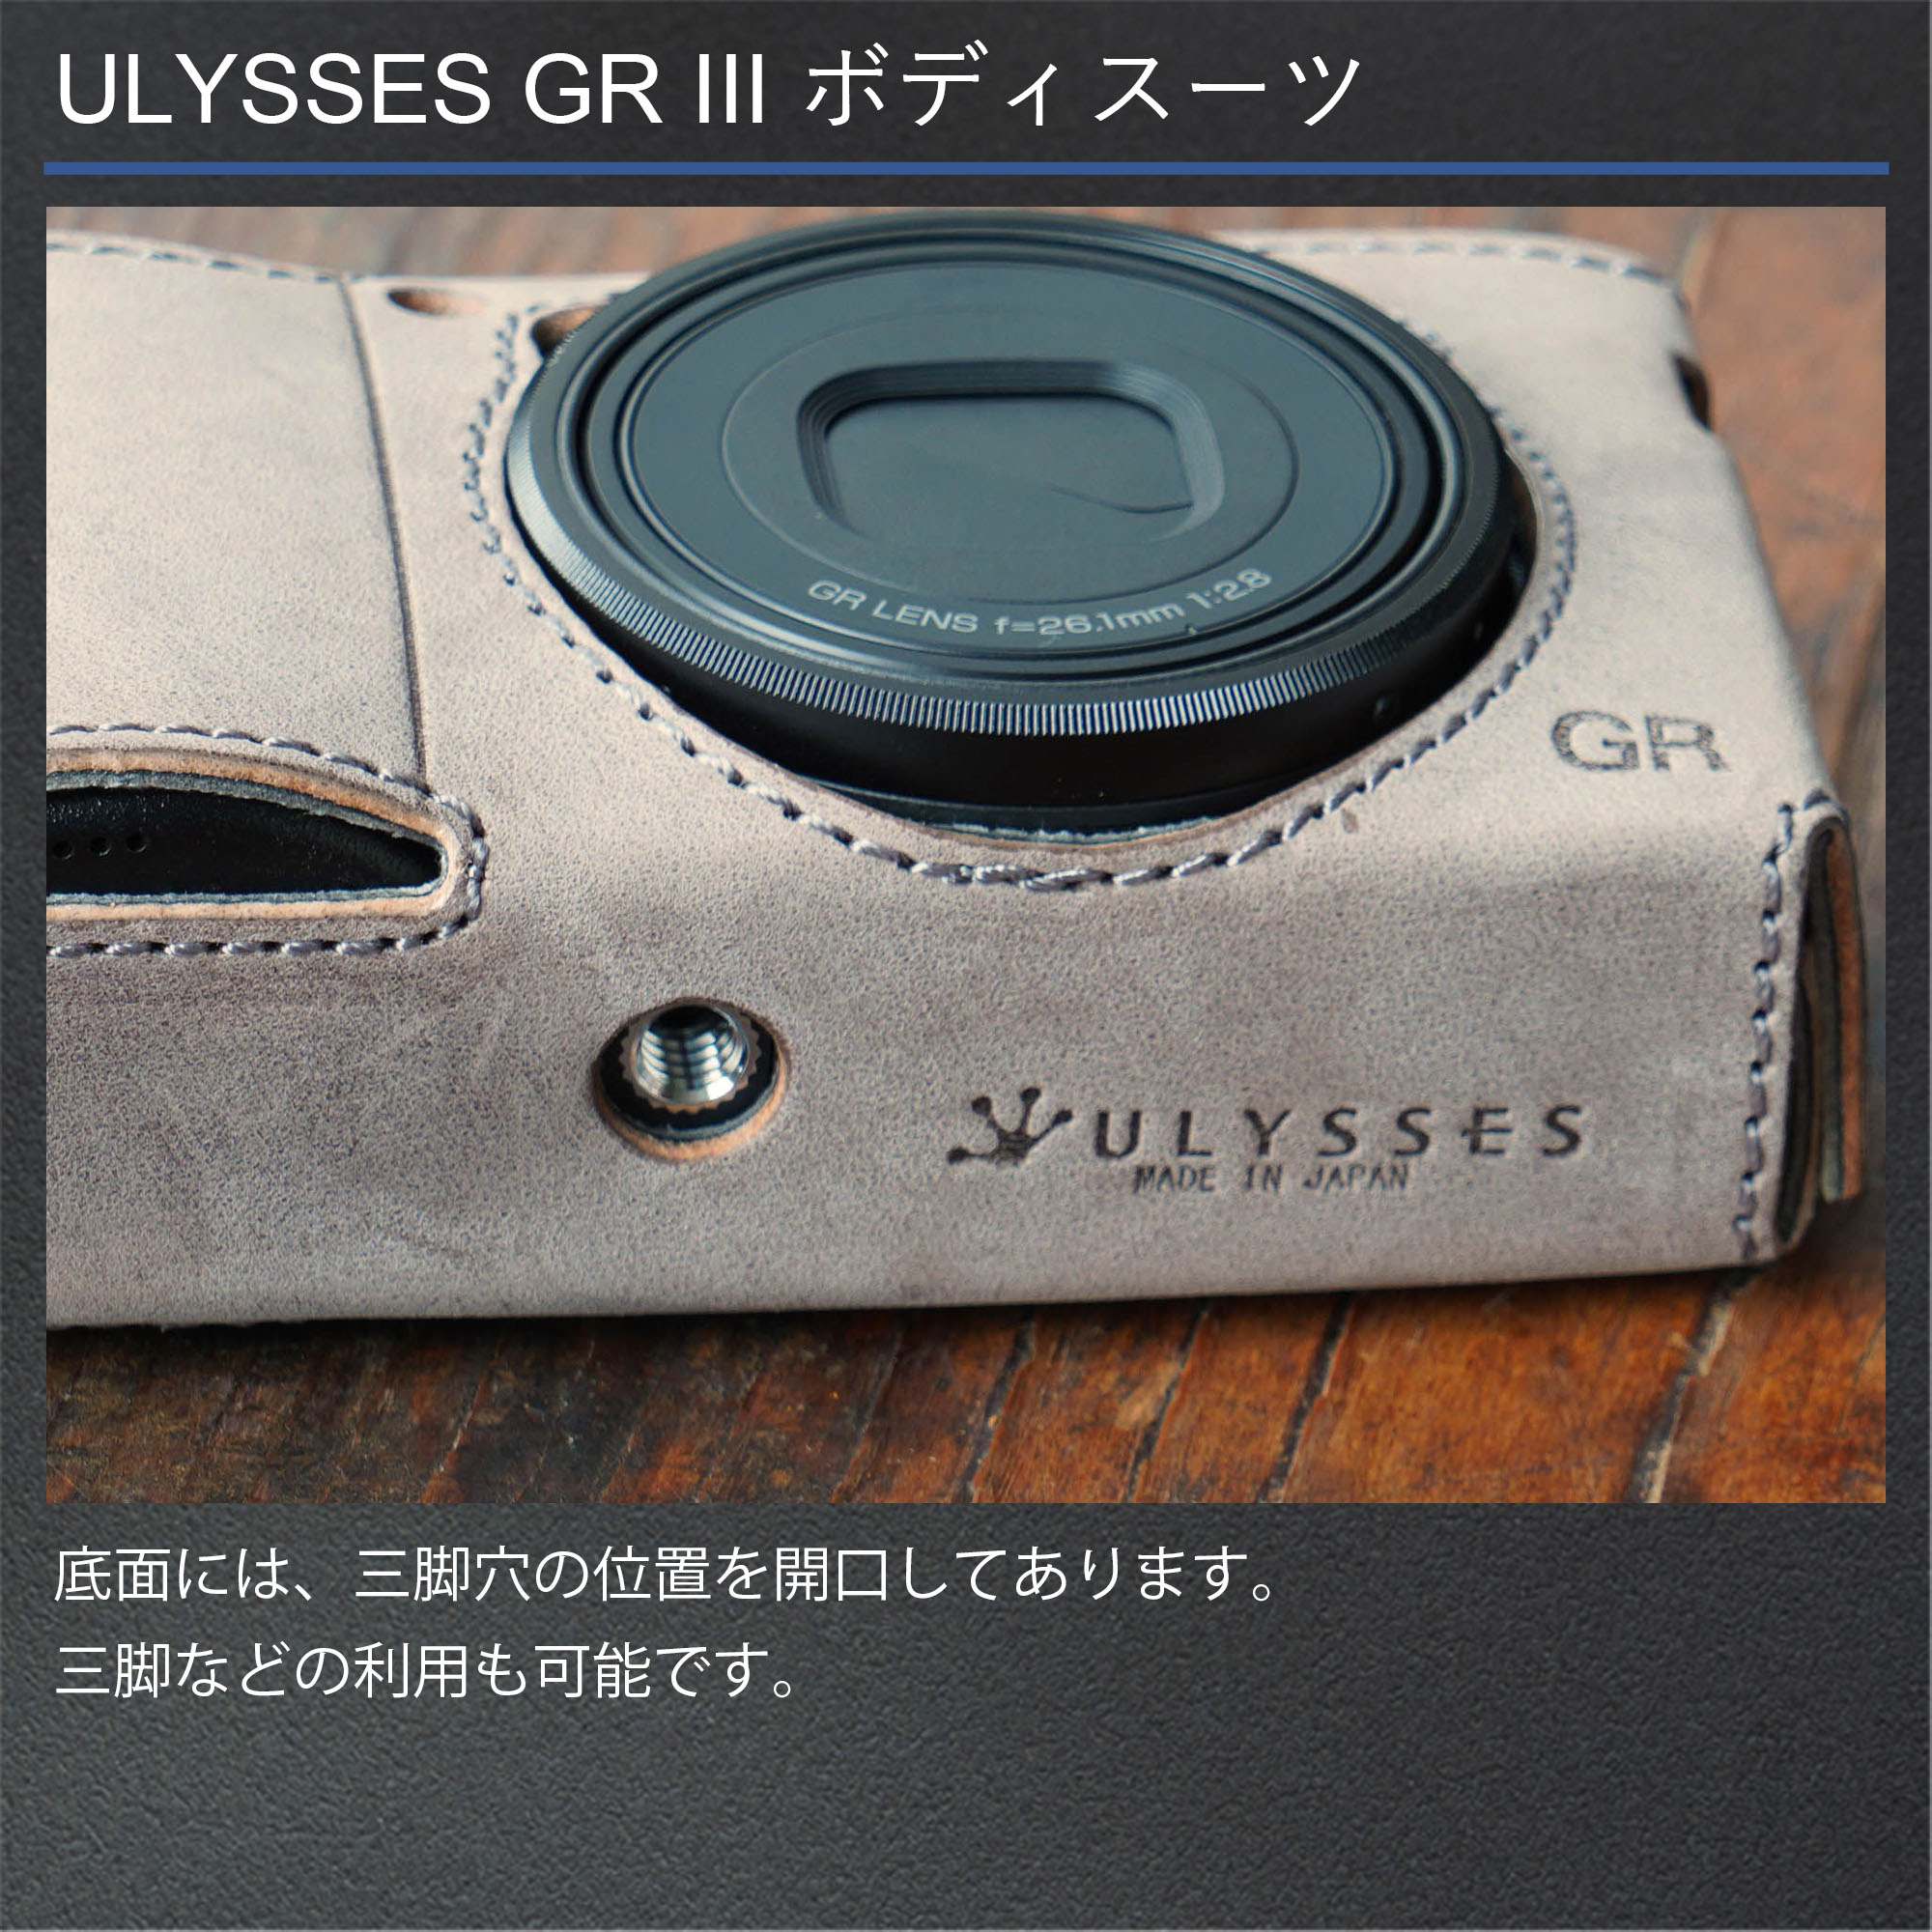 《GRストア限定モデル》ULYSSES(ユリシーズ) GR III ボディースーツ プルーニャ 【GRロゴ入り / カメラケース /  ベジタブルタンニンレザー採用 / フルカバードタイプ / 着せたまま充電可能 / 三脚取り付け可能 / 日本製ハンドメイド】 GRIIIx GRIII  | RICOH 